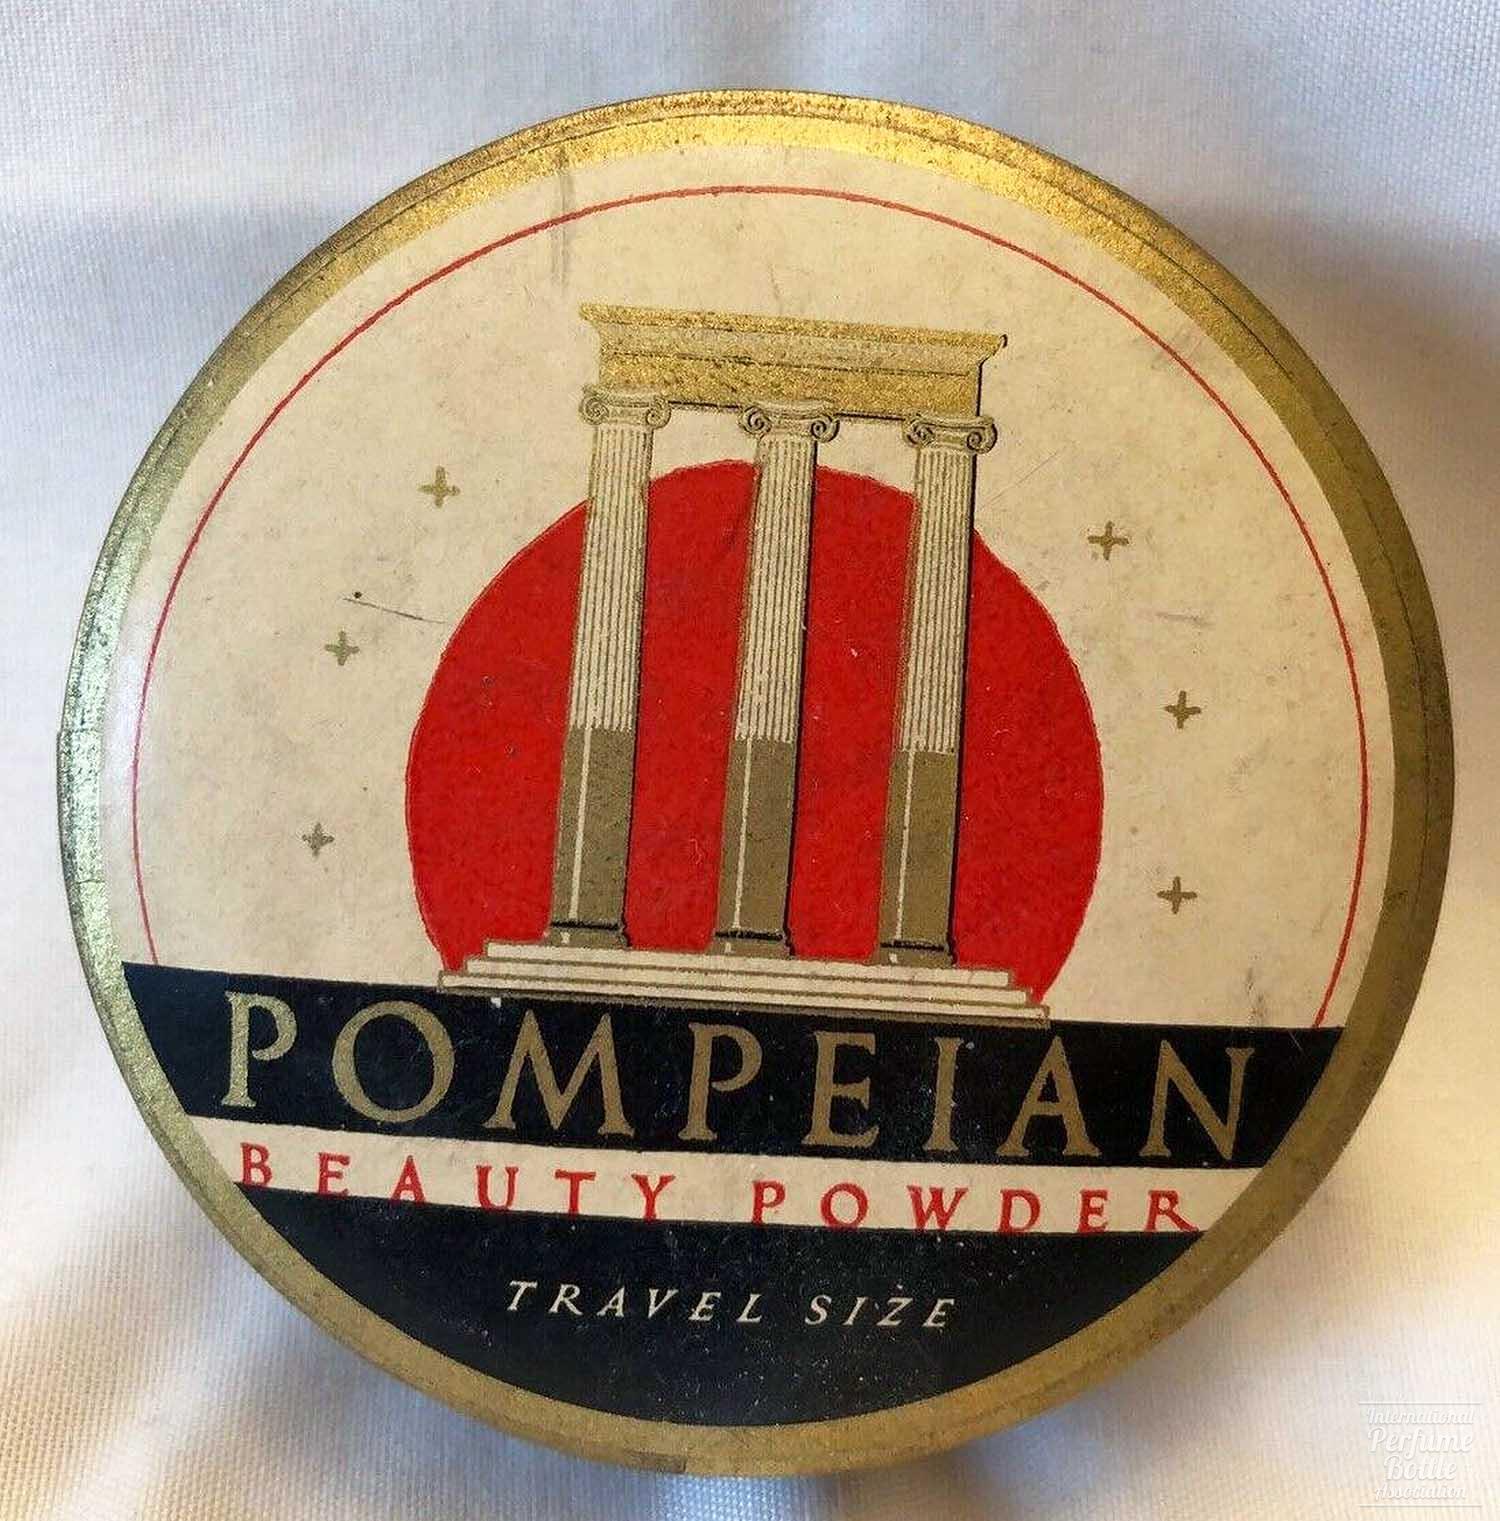 Travel Size Powder Box by Pompeian